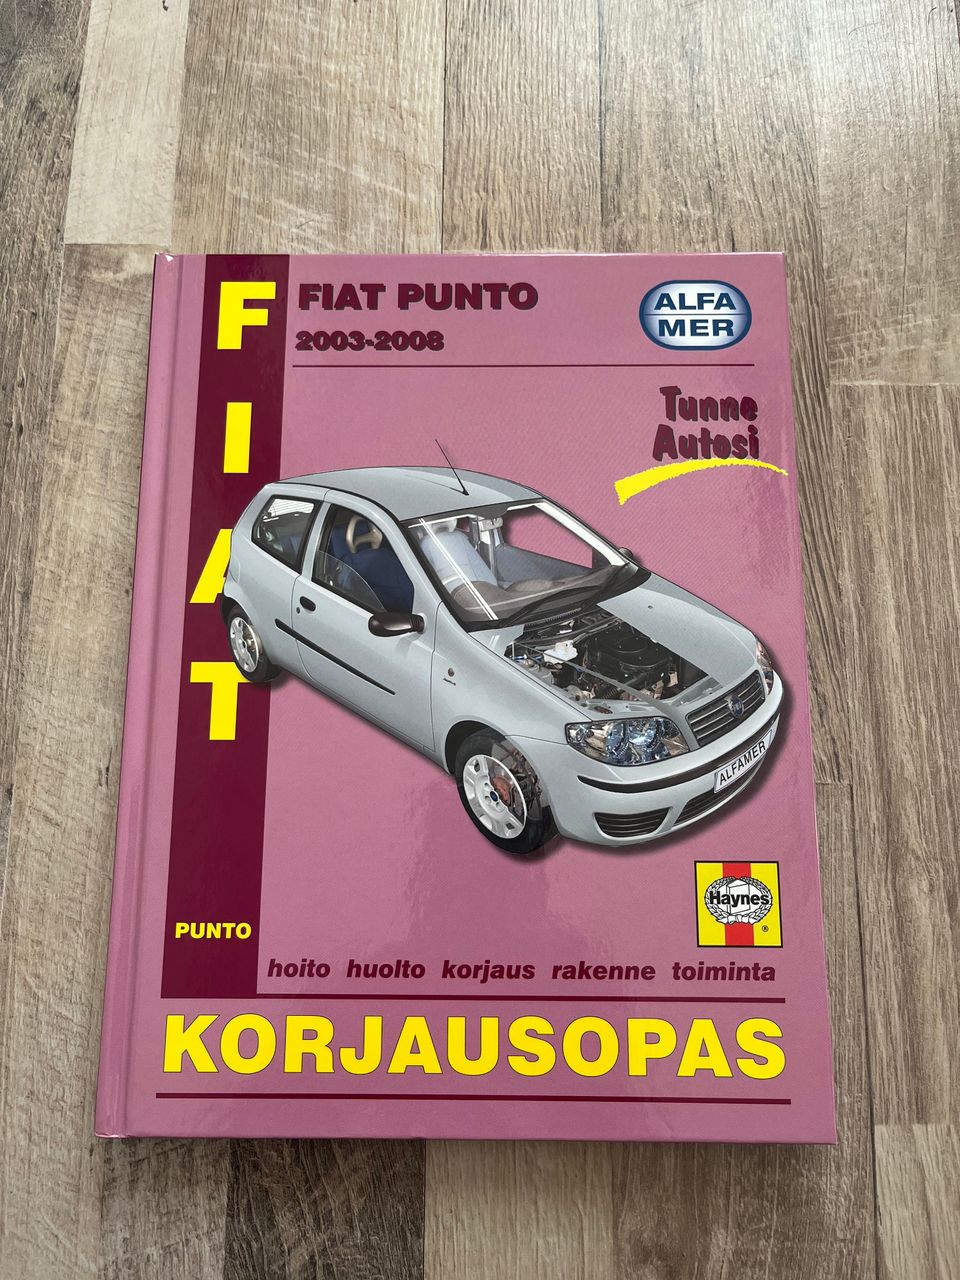 Fiat Punto 2003-2008 korjausopas (Alfamer)